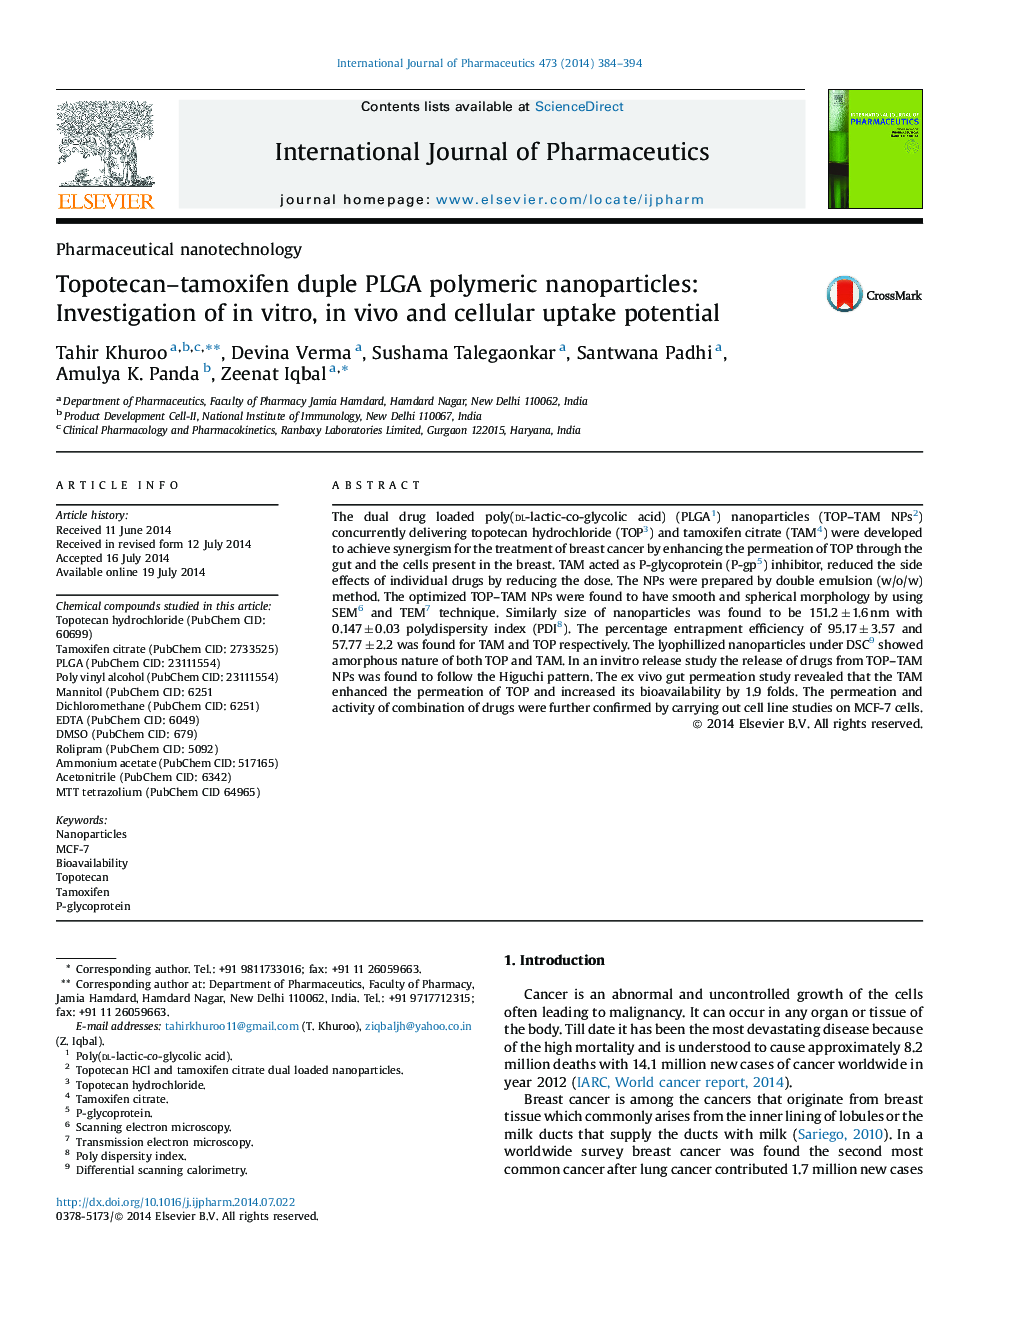 Topotecan-tamoxifen duple PLGA polymeric nanoparticles: Investigation of in vitro, in vivo and cellular uptake potential